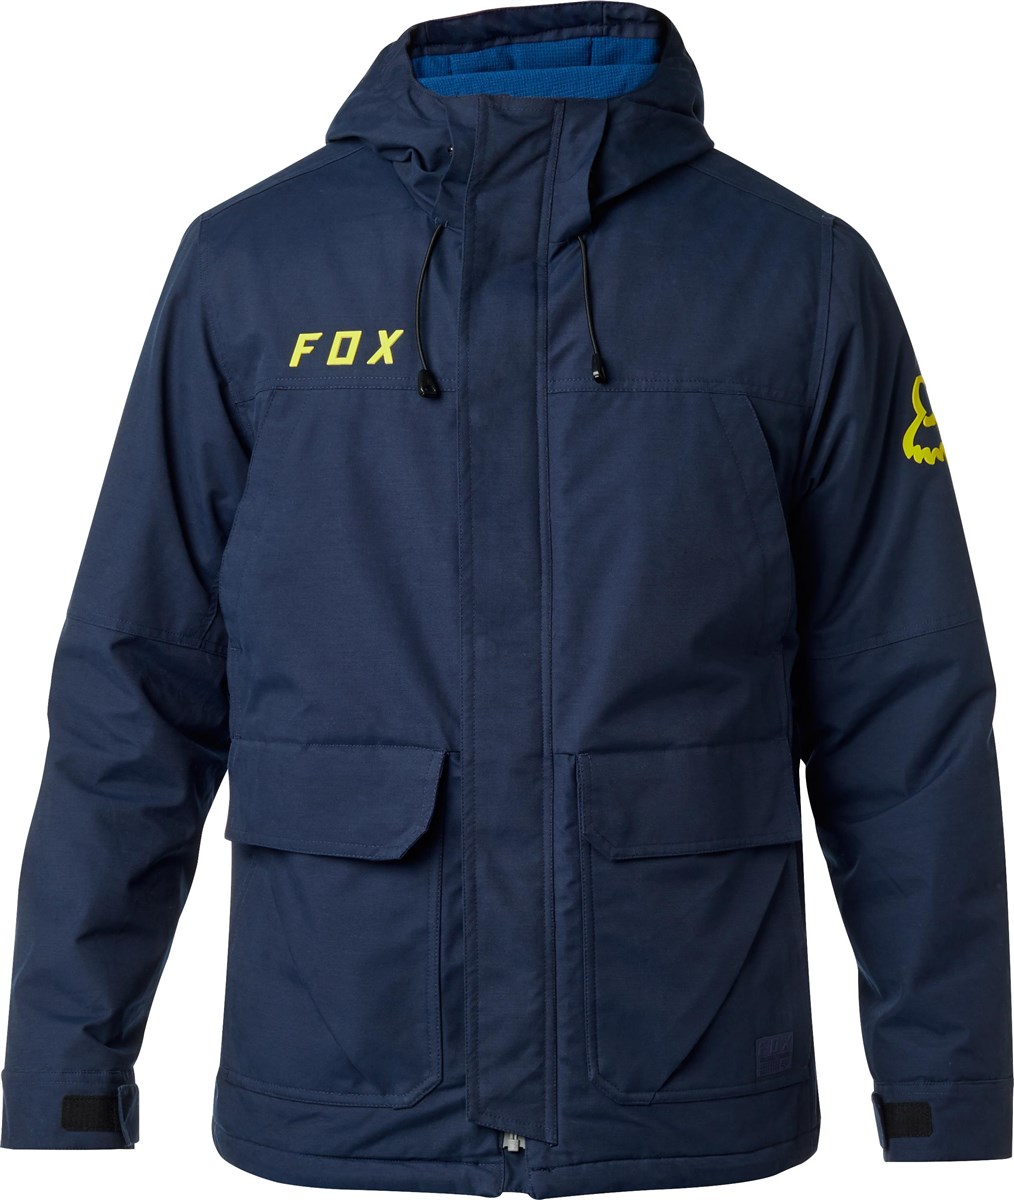 Fox Clothing Trackside Jacket product image